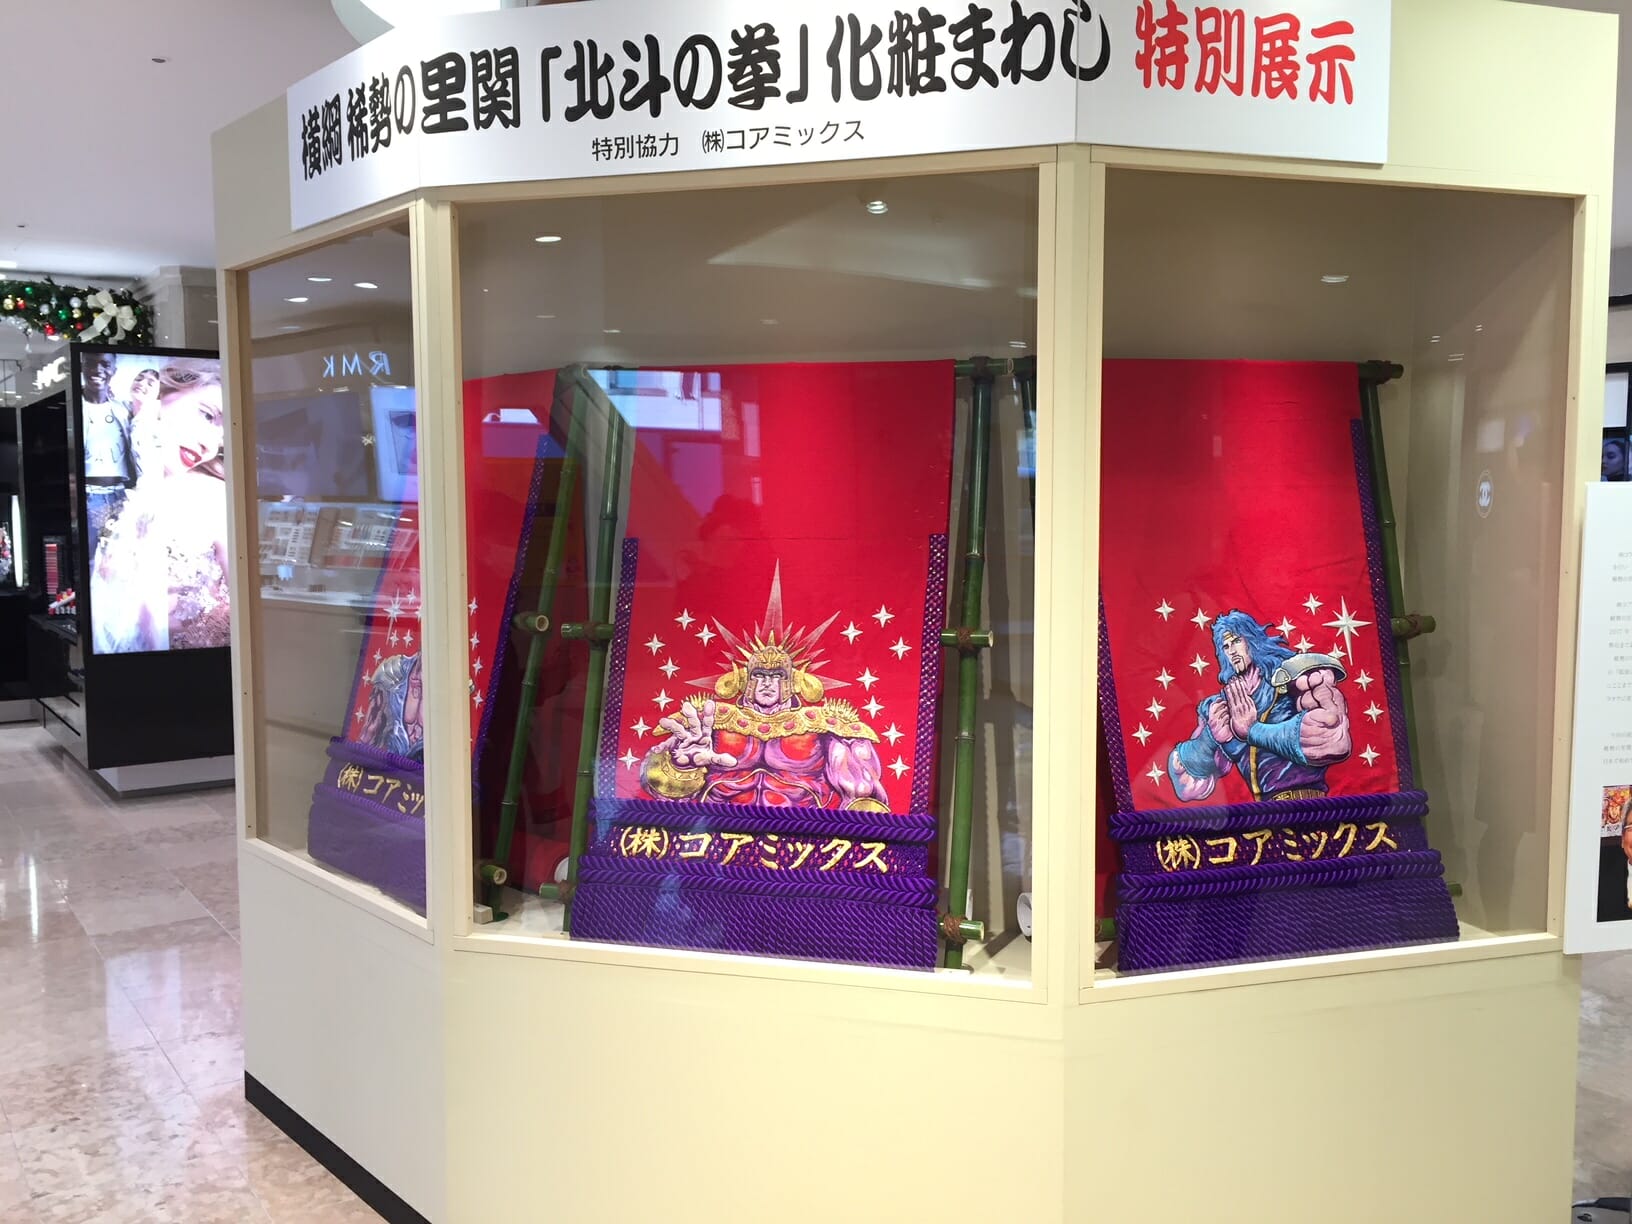 "หมัดดาวเหนือ" จัดแสดงที่ห้างสรรพสินค้า Tsuruya ในคุมาโมโตะ!